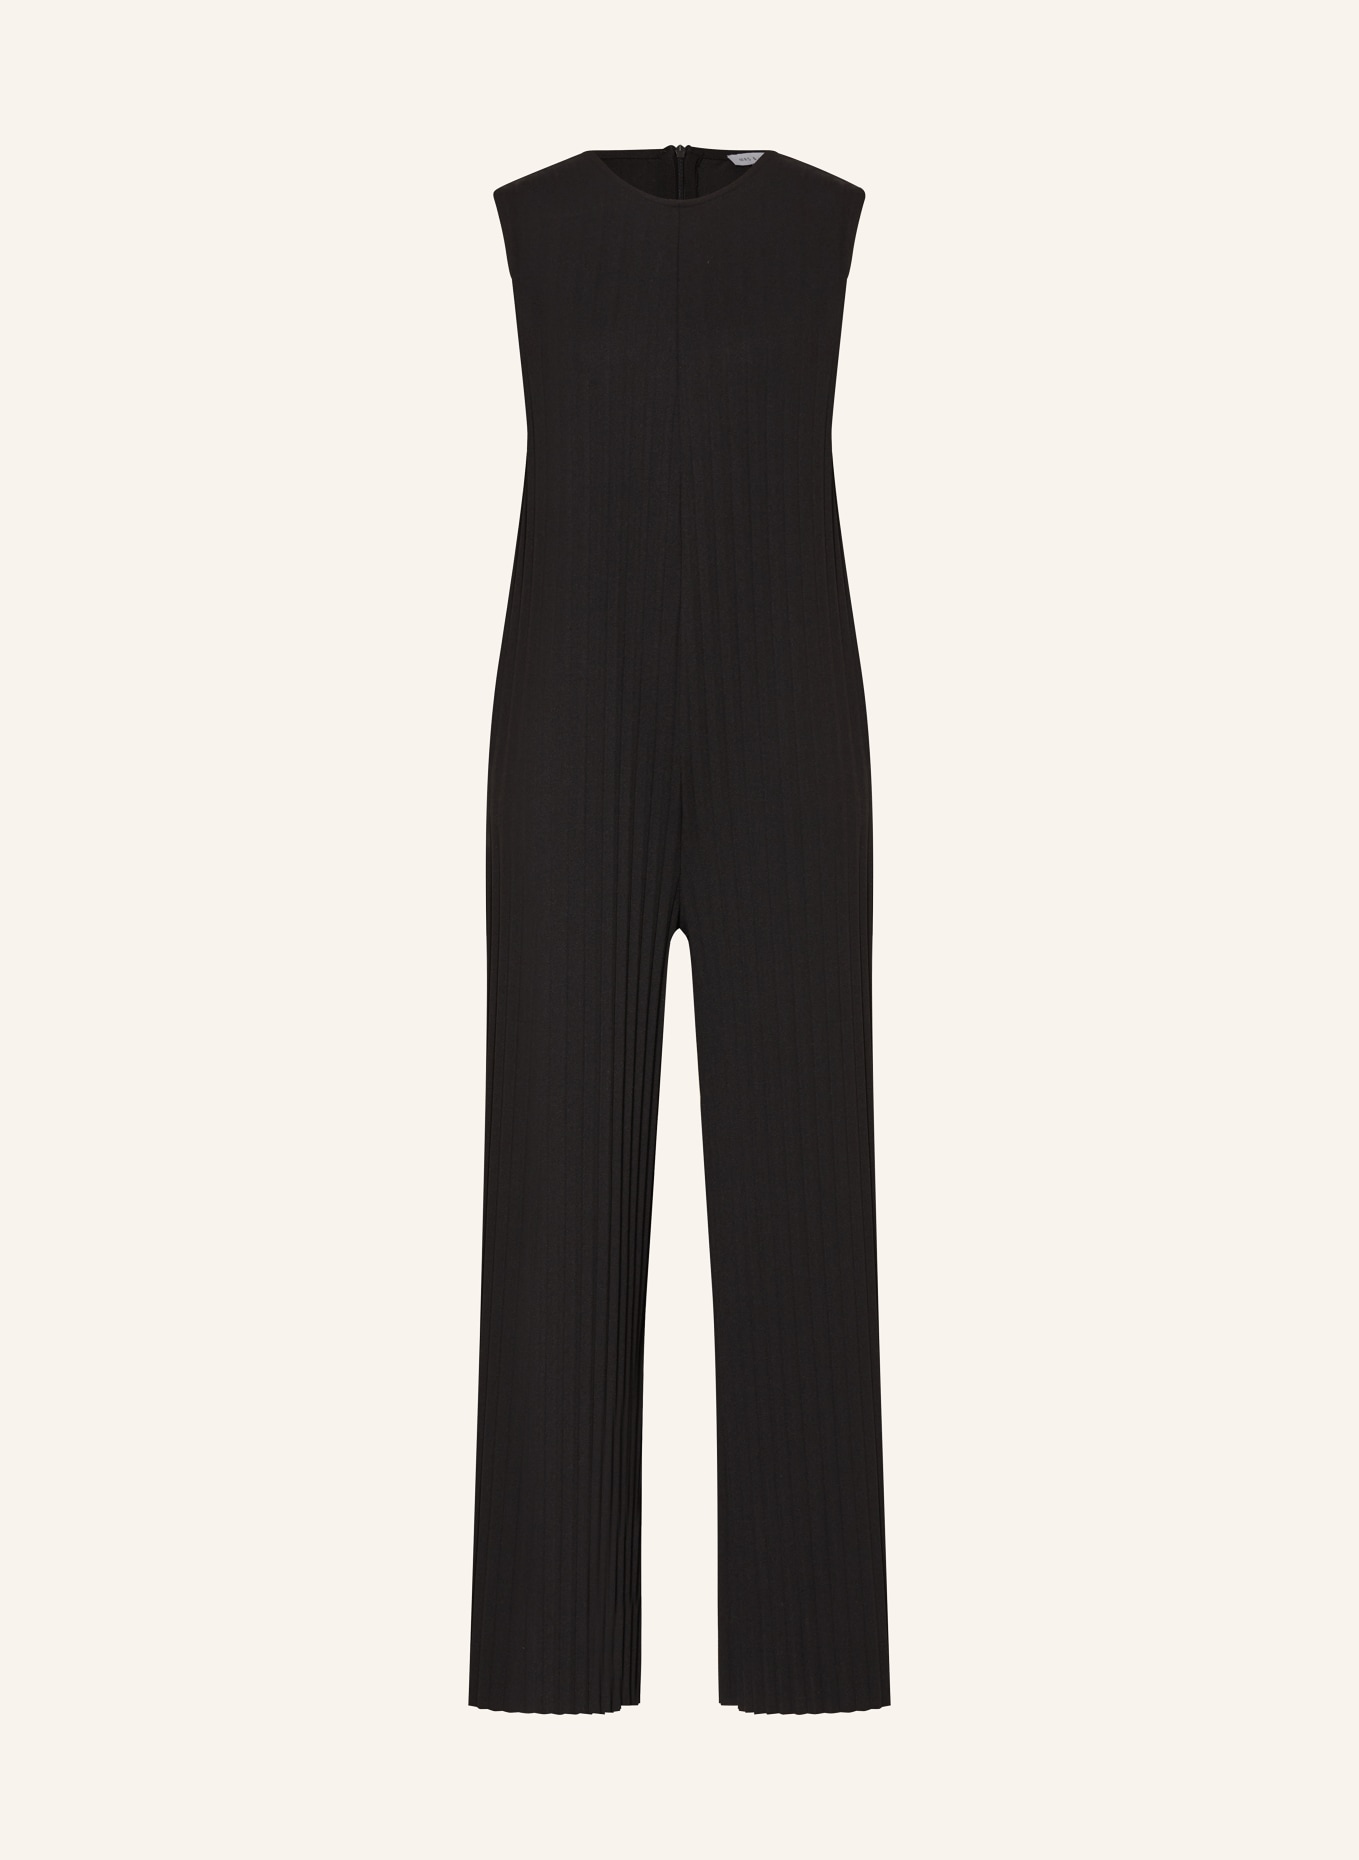 MRS & HUGS Jumpsuit with pleats, Color: BLACK (Image 1)